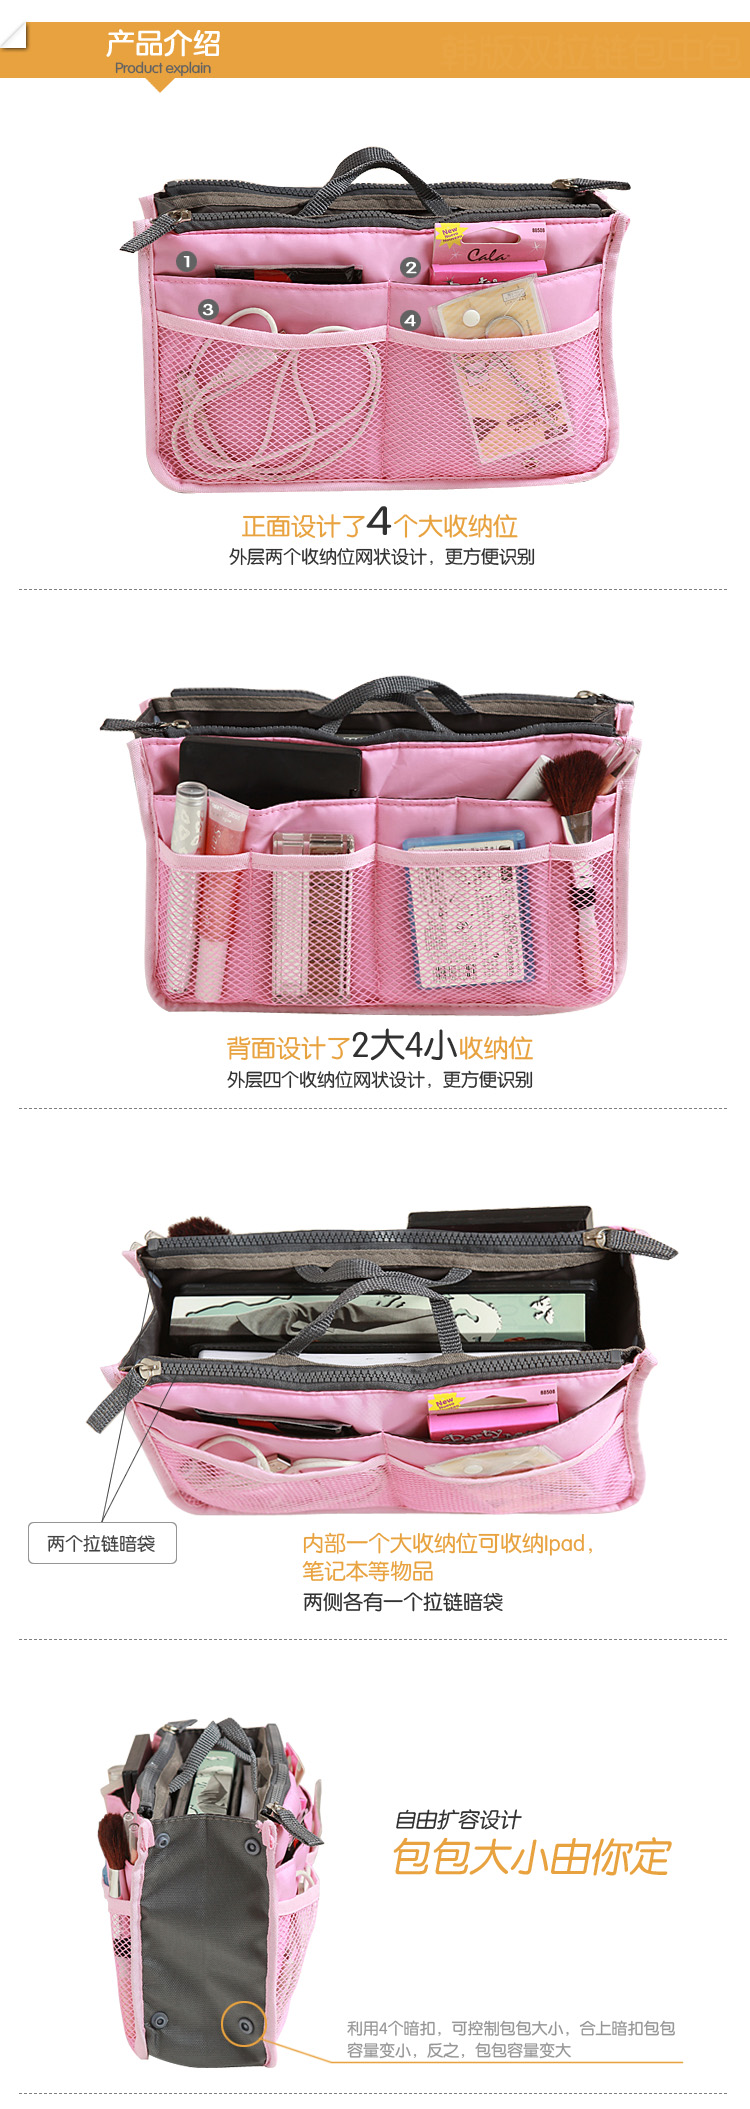 普润 包中包 收纳包 整理包 加厚带手提多功能收纳整理包 内包粉色 D9102